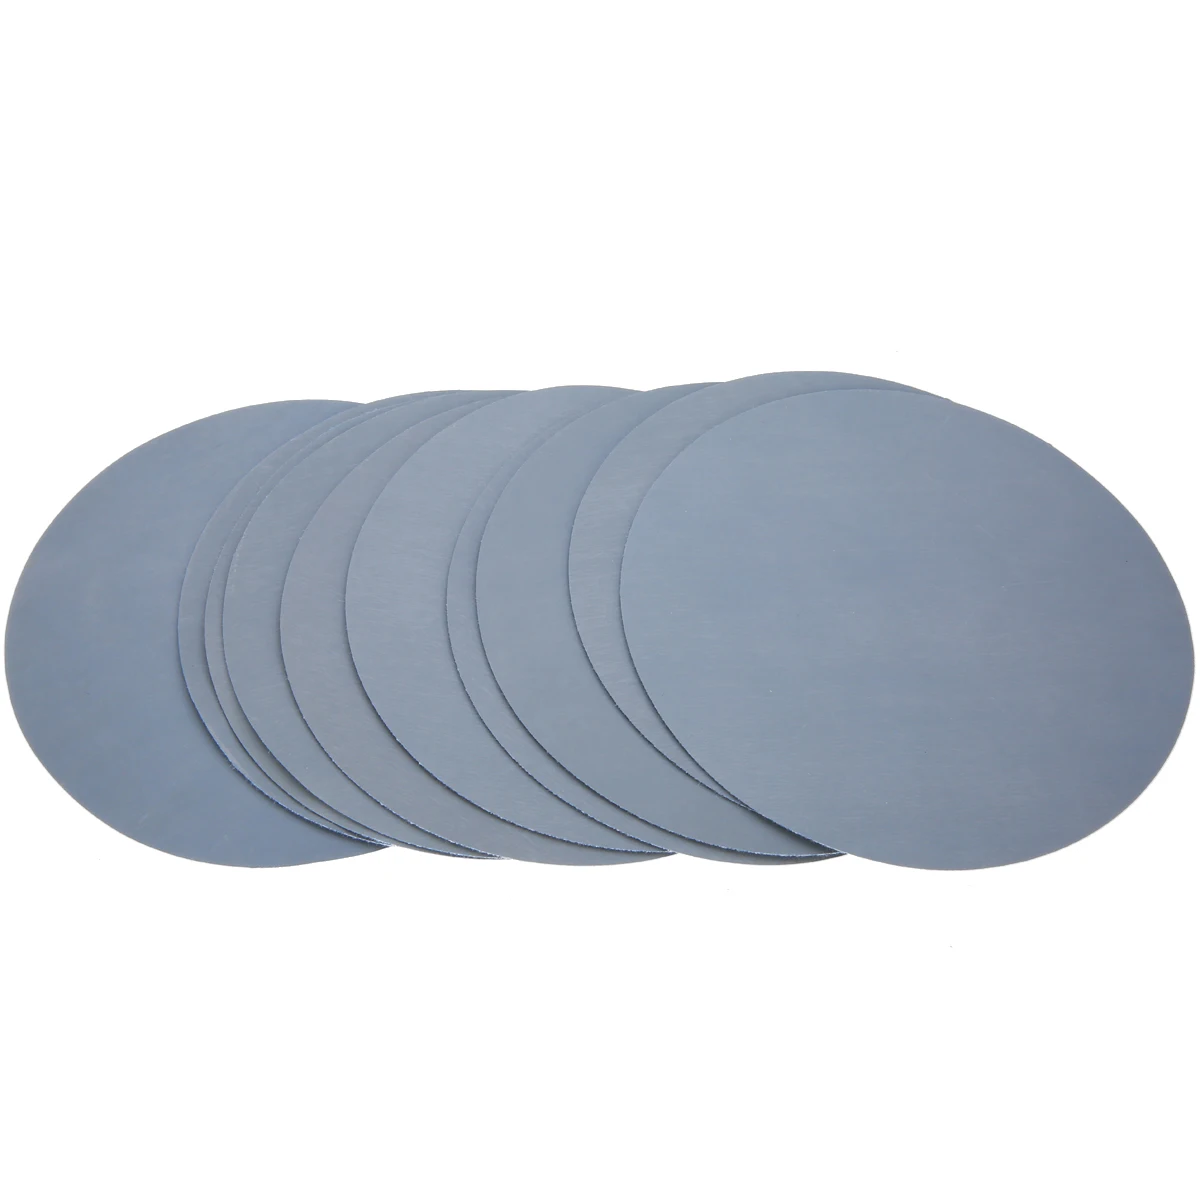 20 шт. 6 дюймов 3000 зернистость шлифовальная полировка дисков шлифовальная накладка наждачная бумага 150 мм шлифовальный диск для шлифовальный станок для дерева диск